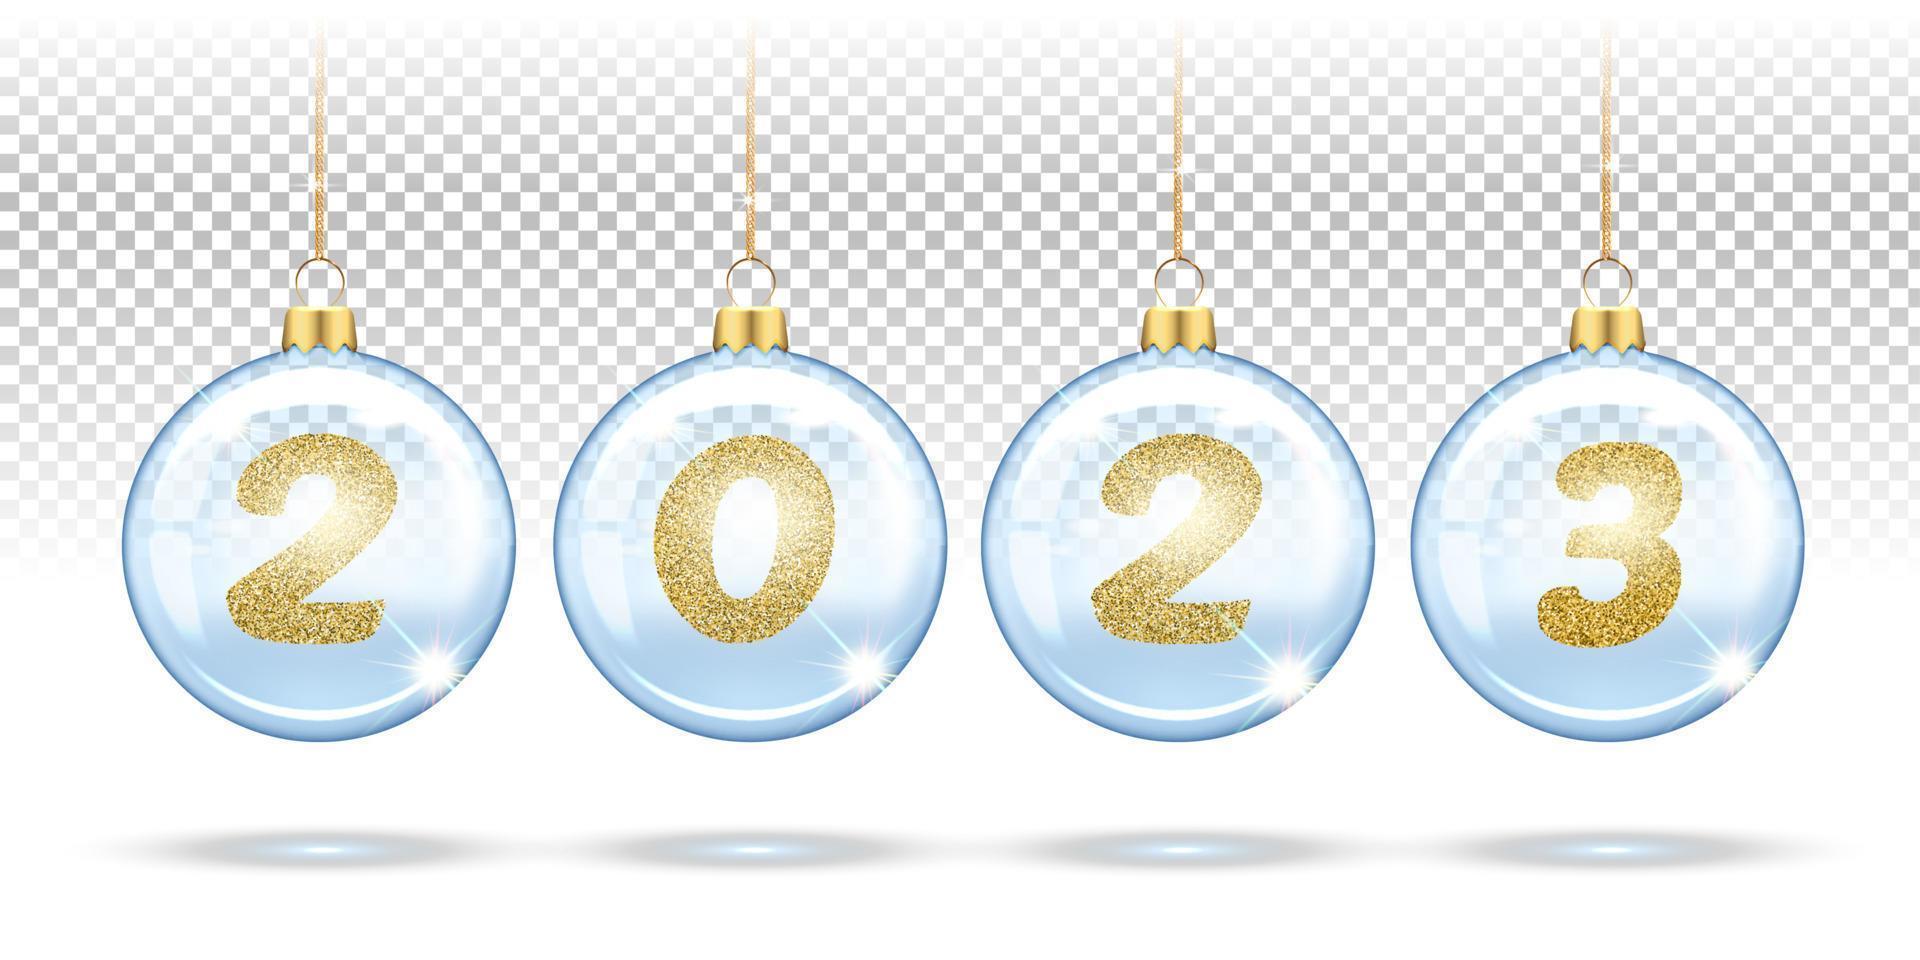 números 2023 de lentejuelas doradas en bolas transparentes de navidad, decoraciones para árboles de navidad. diseño festivo de pancartas, carteles, tarjetas de felicitación para el nuevo año. 3d realista sobre un fondo blanco vector